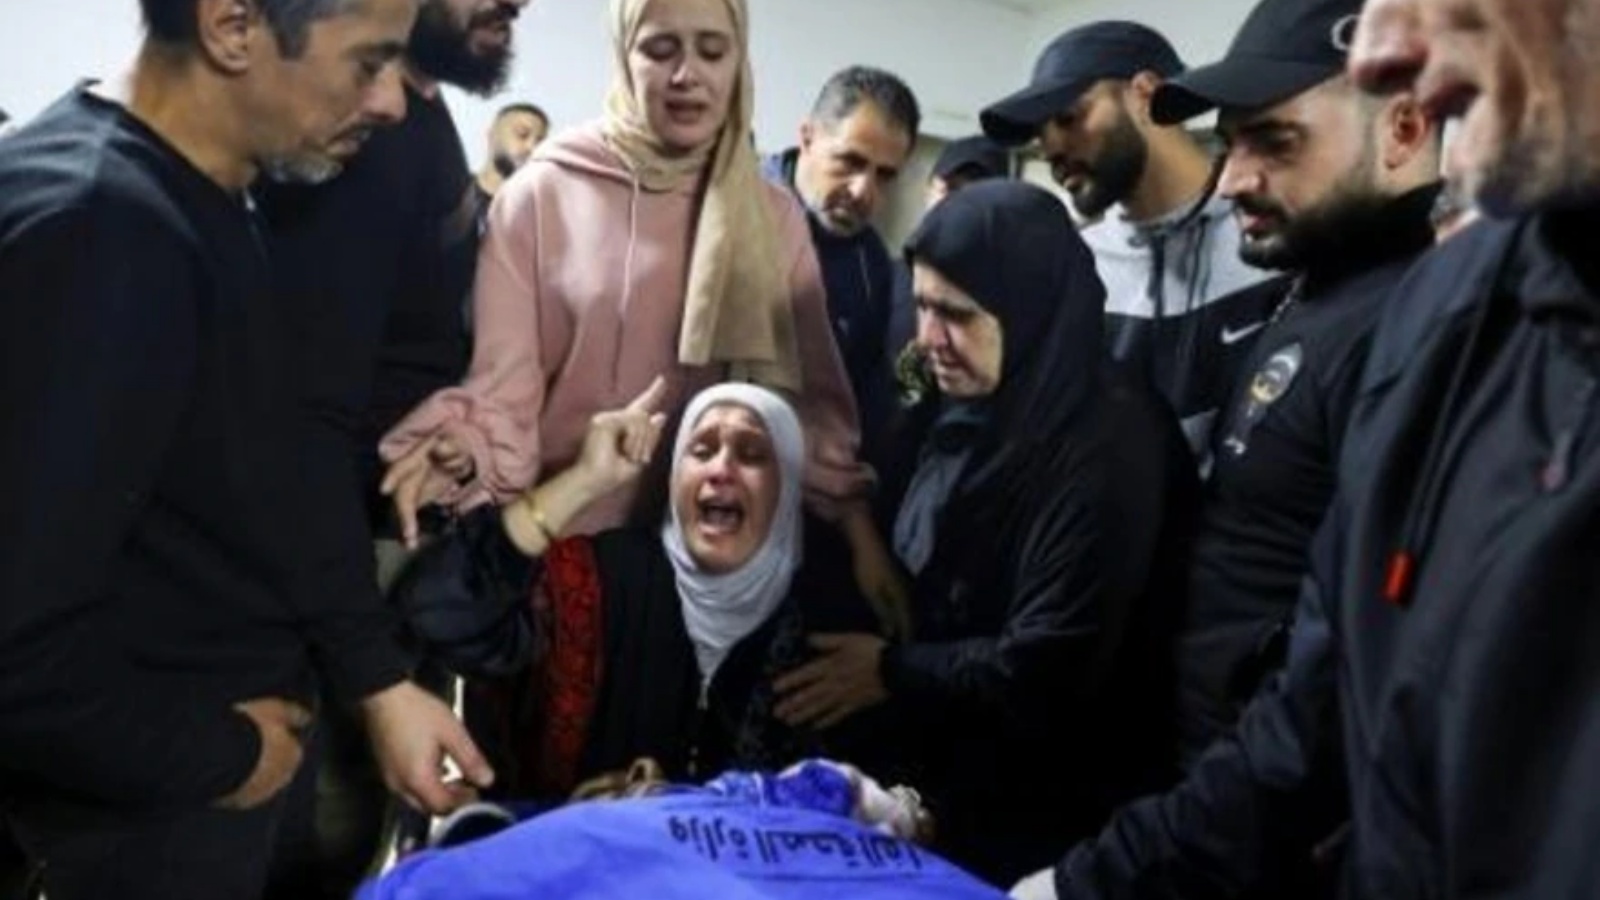 والدة الناشط الفلسطيني تامر الكيلاني (33 عامًا) تلقي نظرة الوداع على جثمان نجلها في مستشفى رفيديا المحلي وكان الكيلاني قتل في انفجار عبوة ناسفة في البلدة القديمة في مدينة نابلس في الضفة الغربية المحتلة في 22 أكتوبر 2022